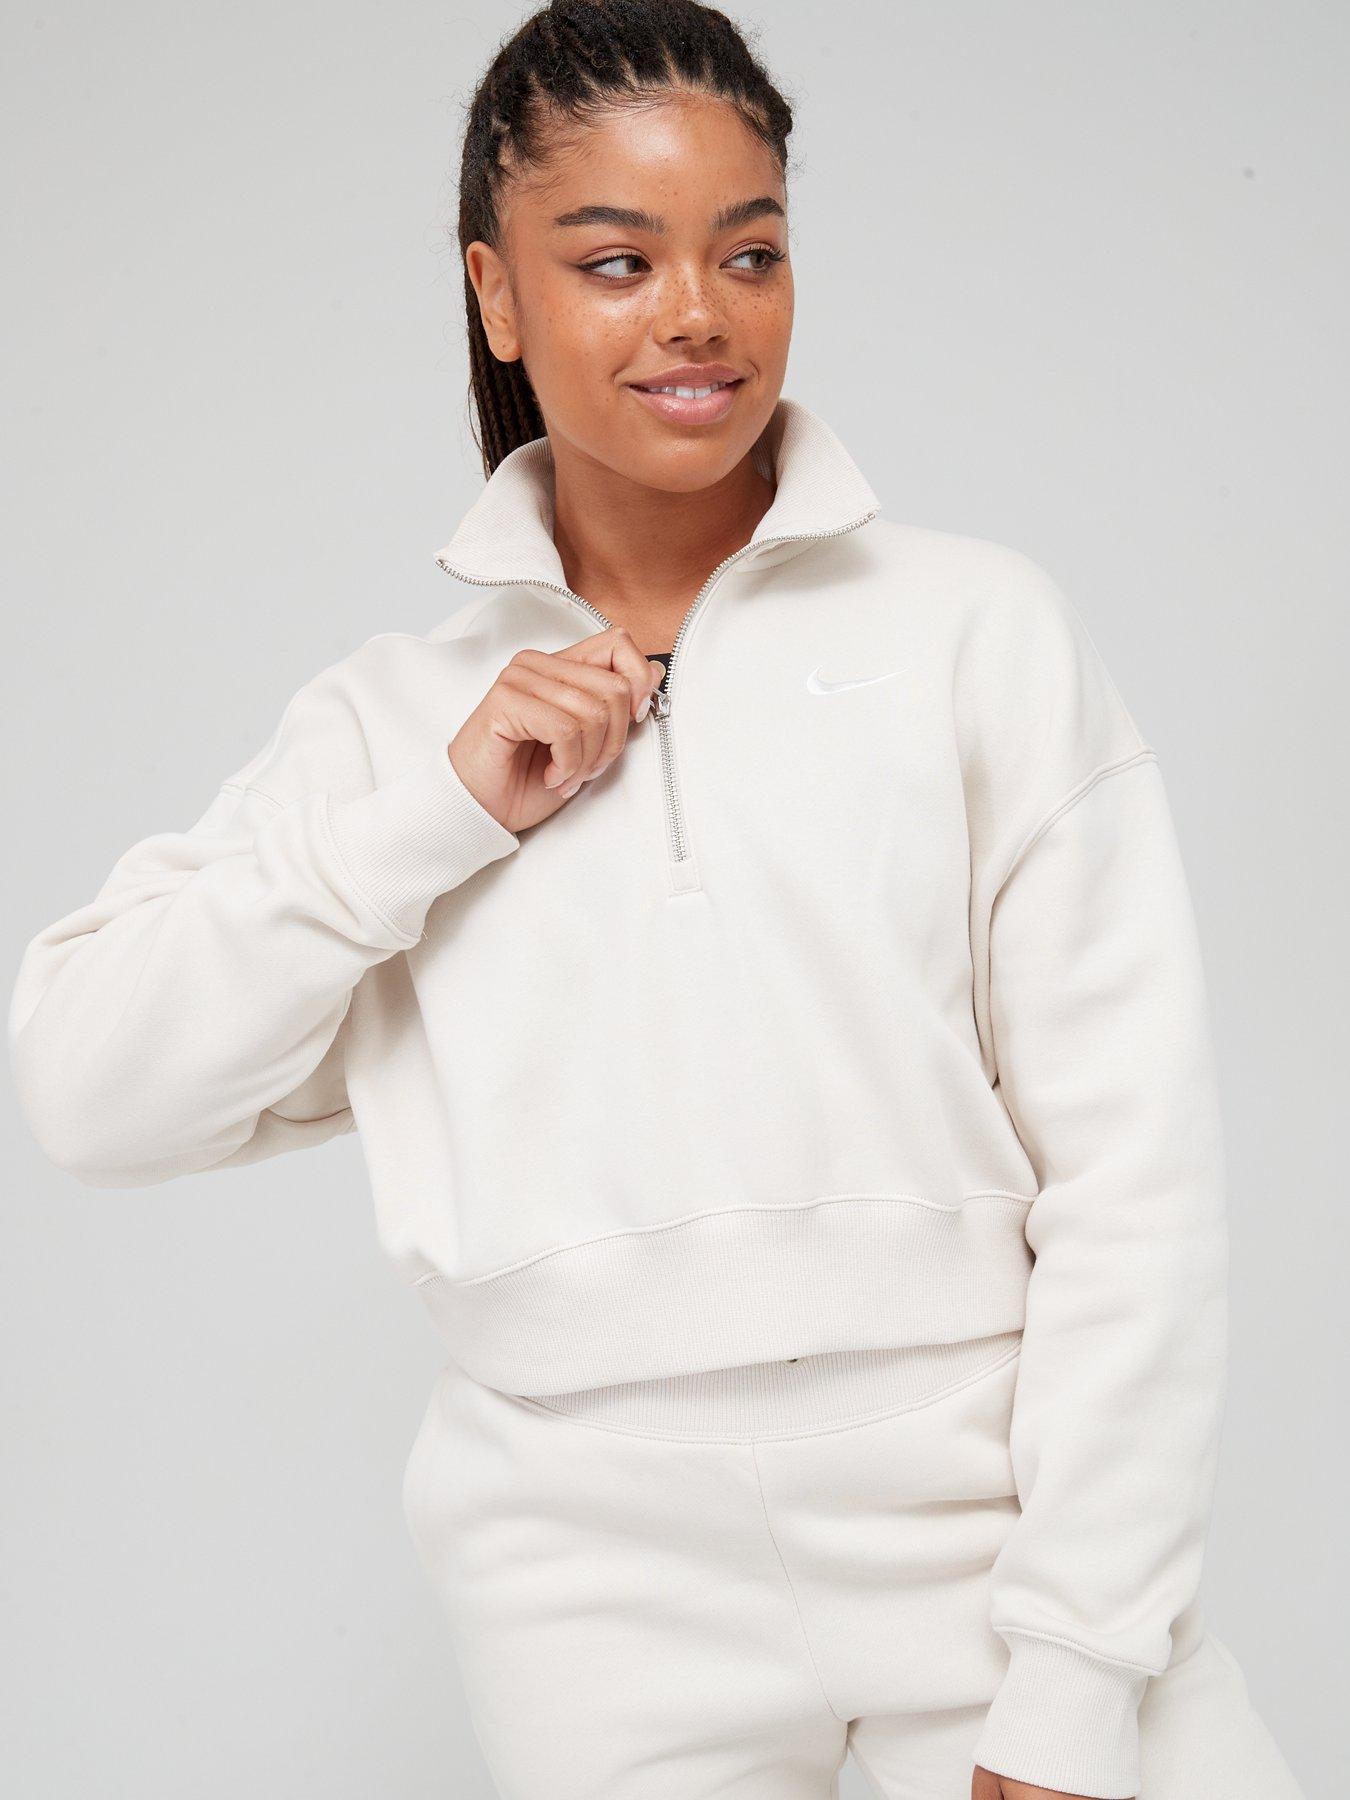 Women's Half Zip Long Sleeve Fleece Sweatshirt with Pockets Womens Quarter  Zip Athletic (Beige, S) : : Clothing, Shoes & Accessories